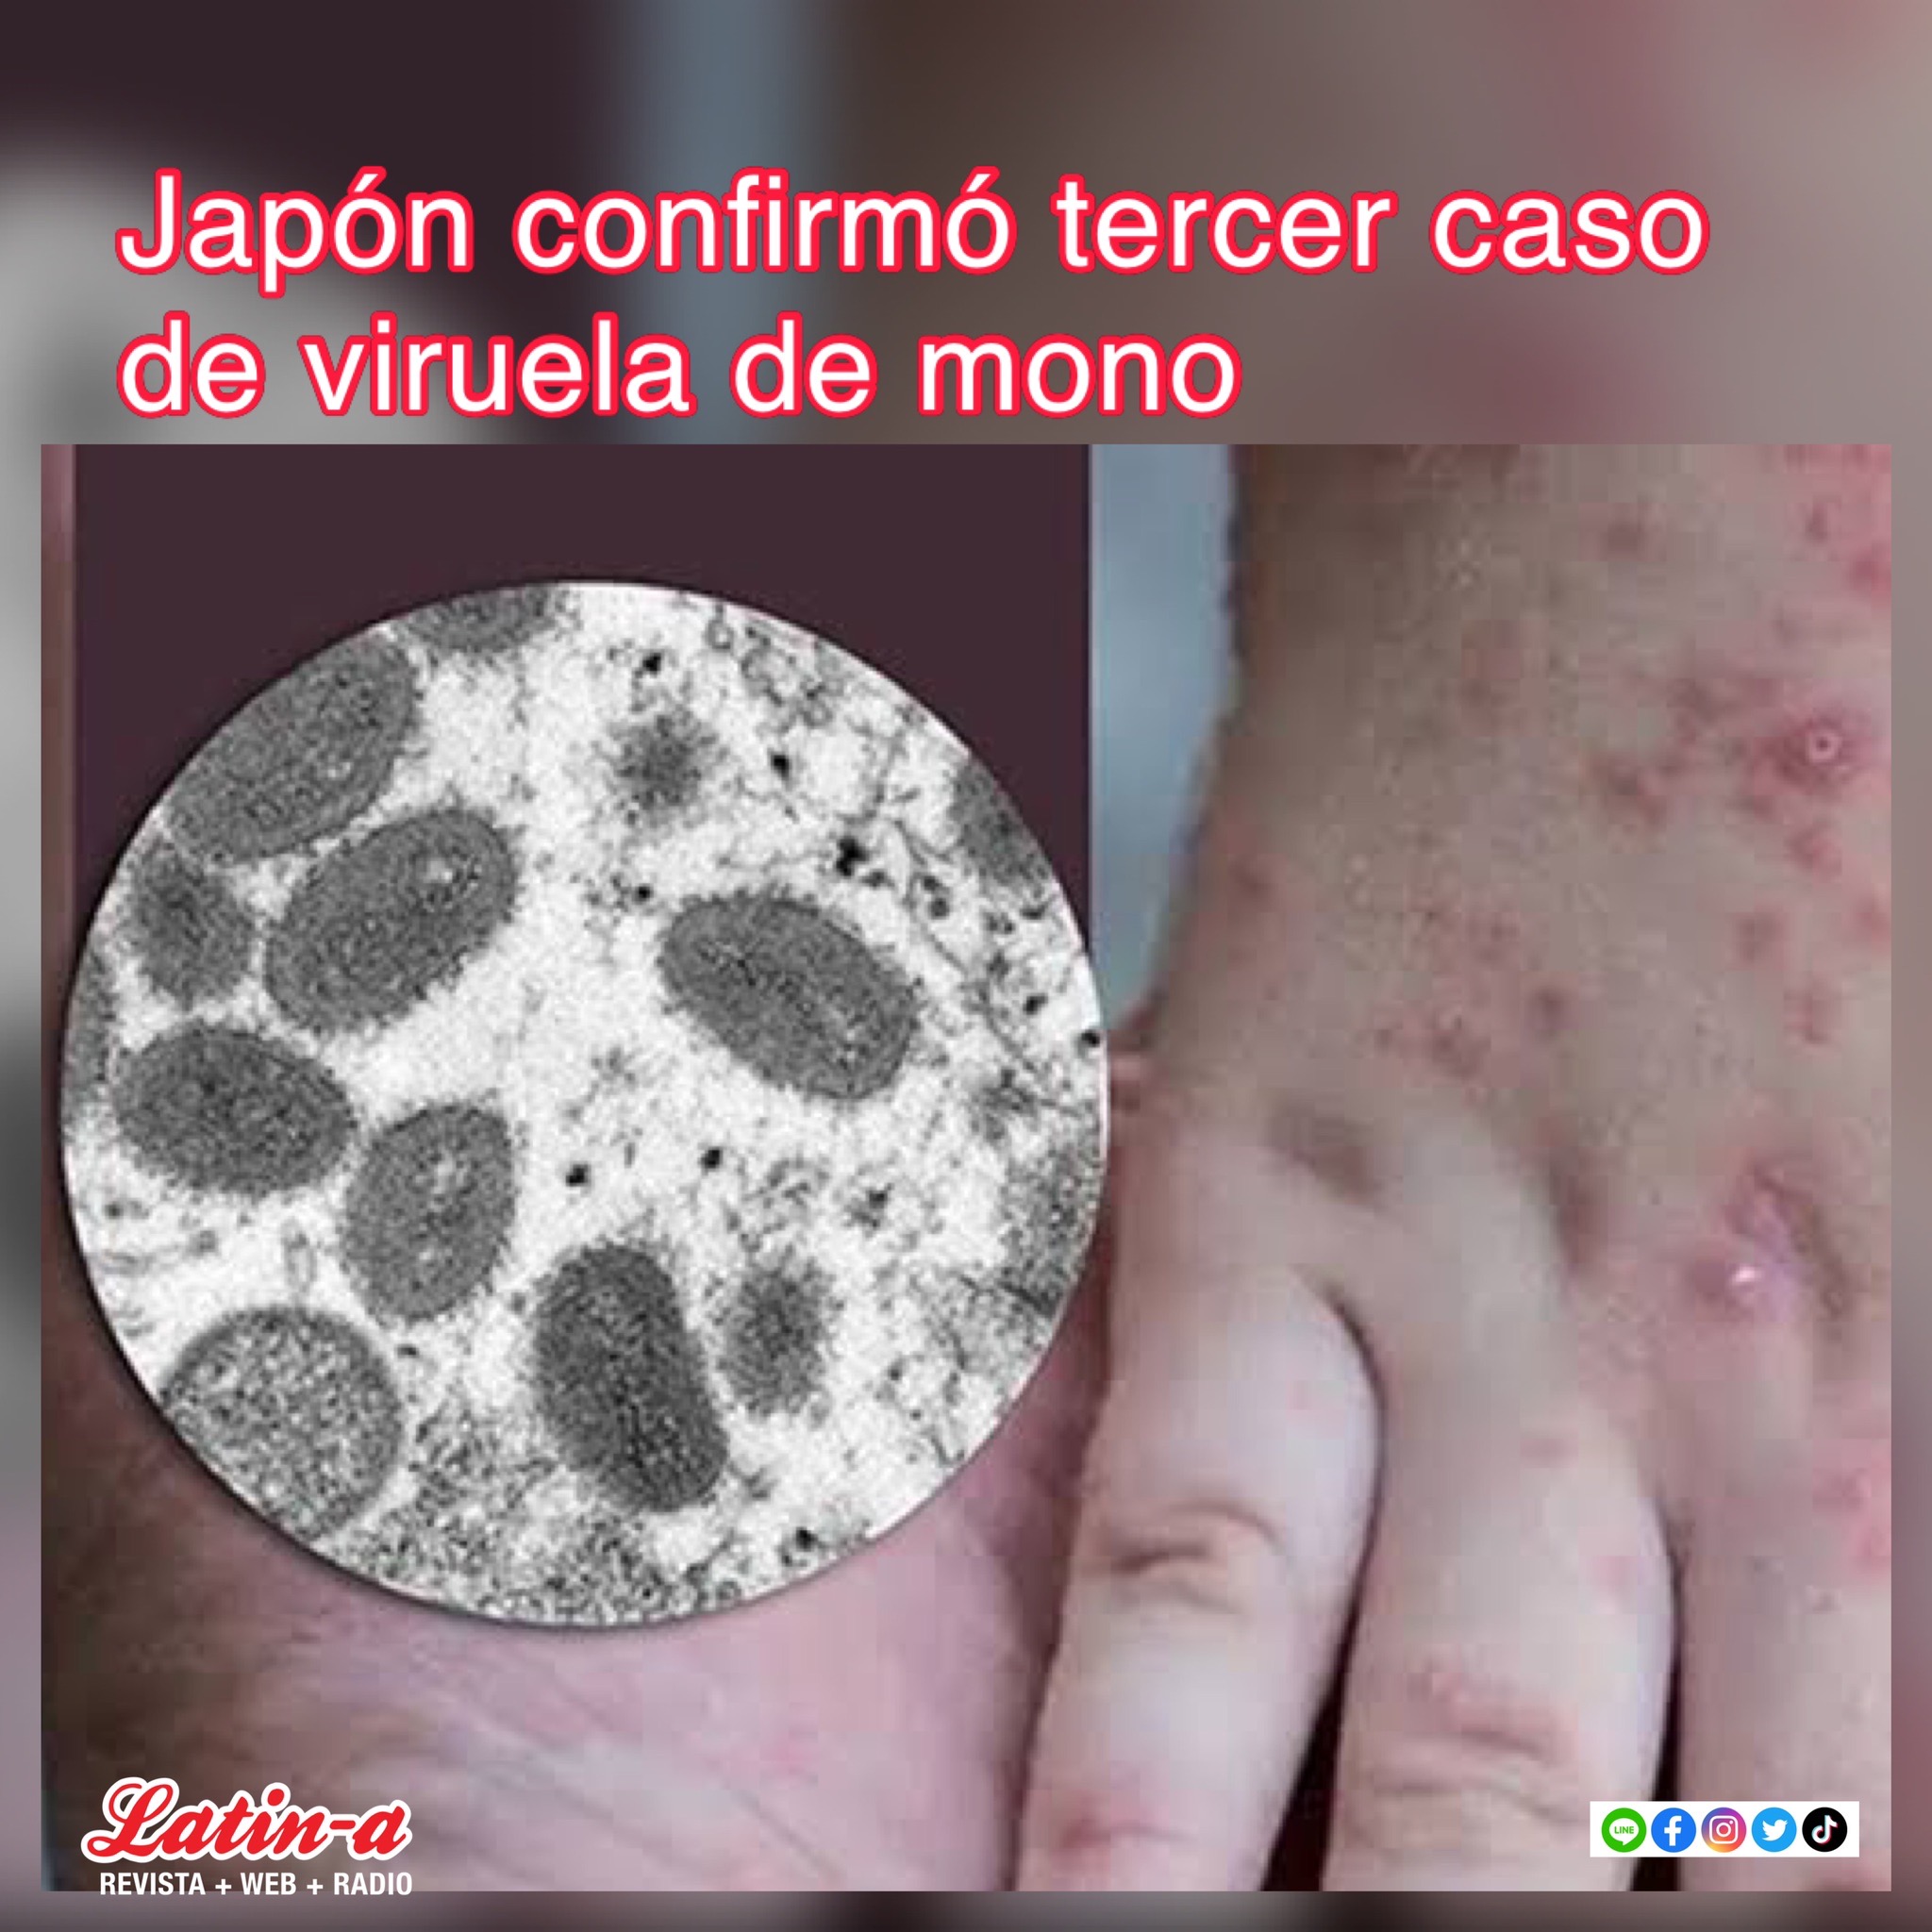 Confirman tercer caso de «Viruela de mono» en Japón.